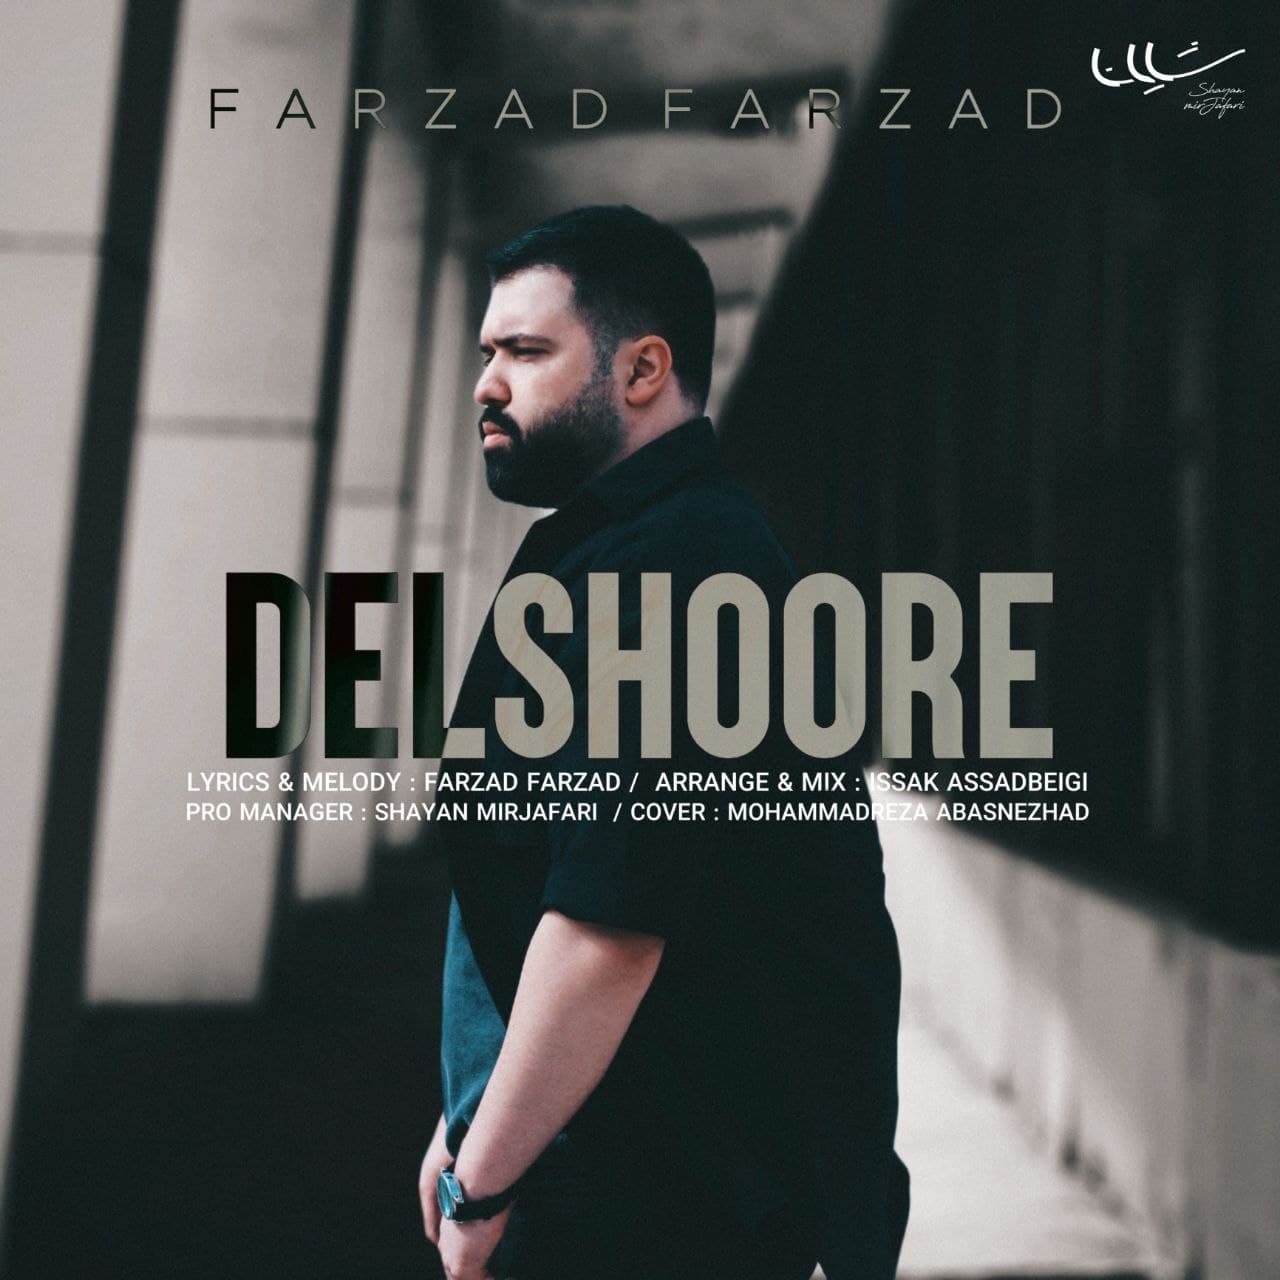 Farzad Farzad – Delshoore